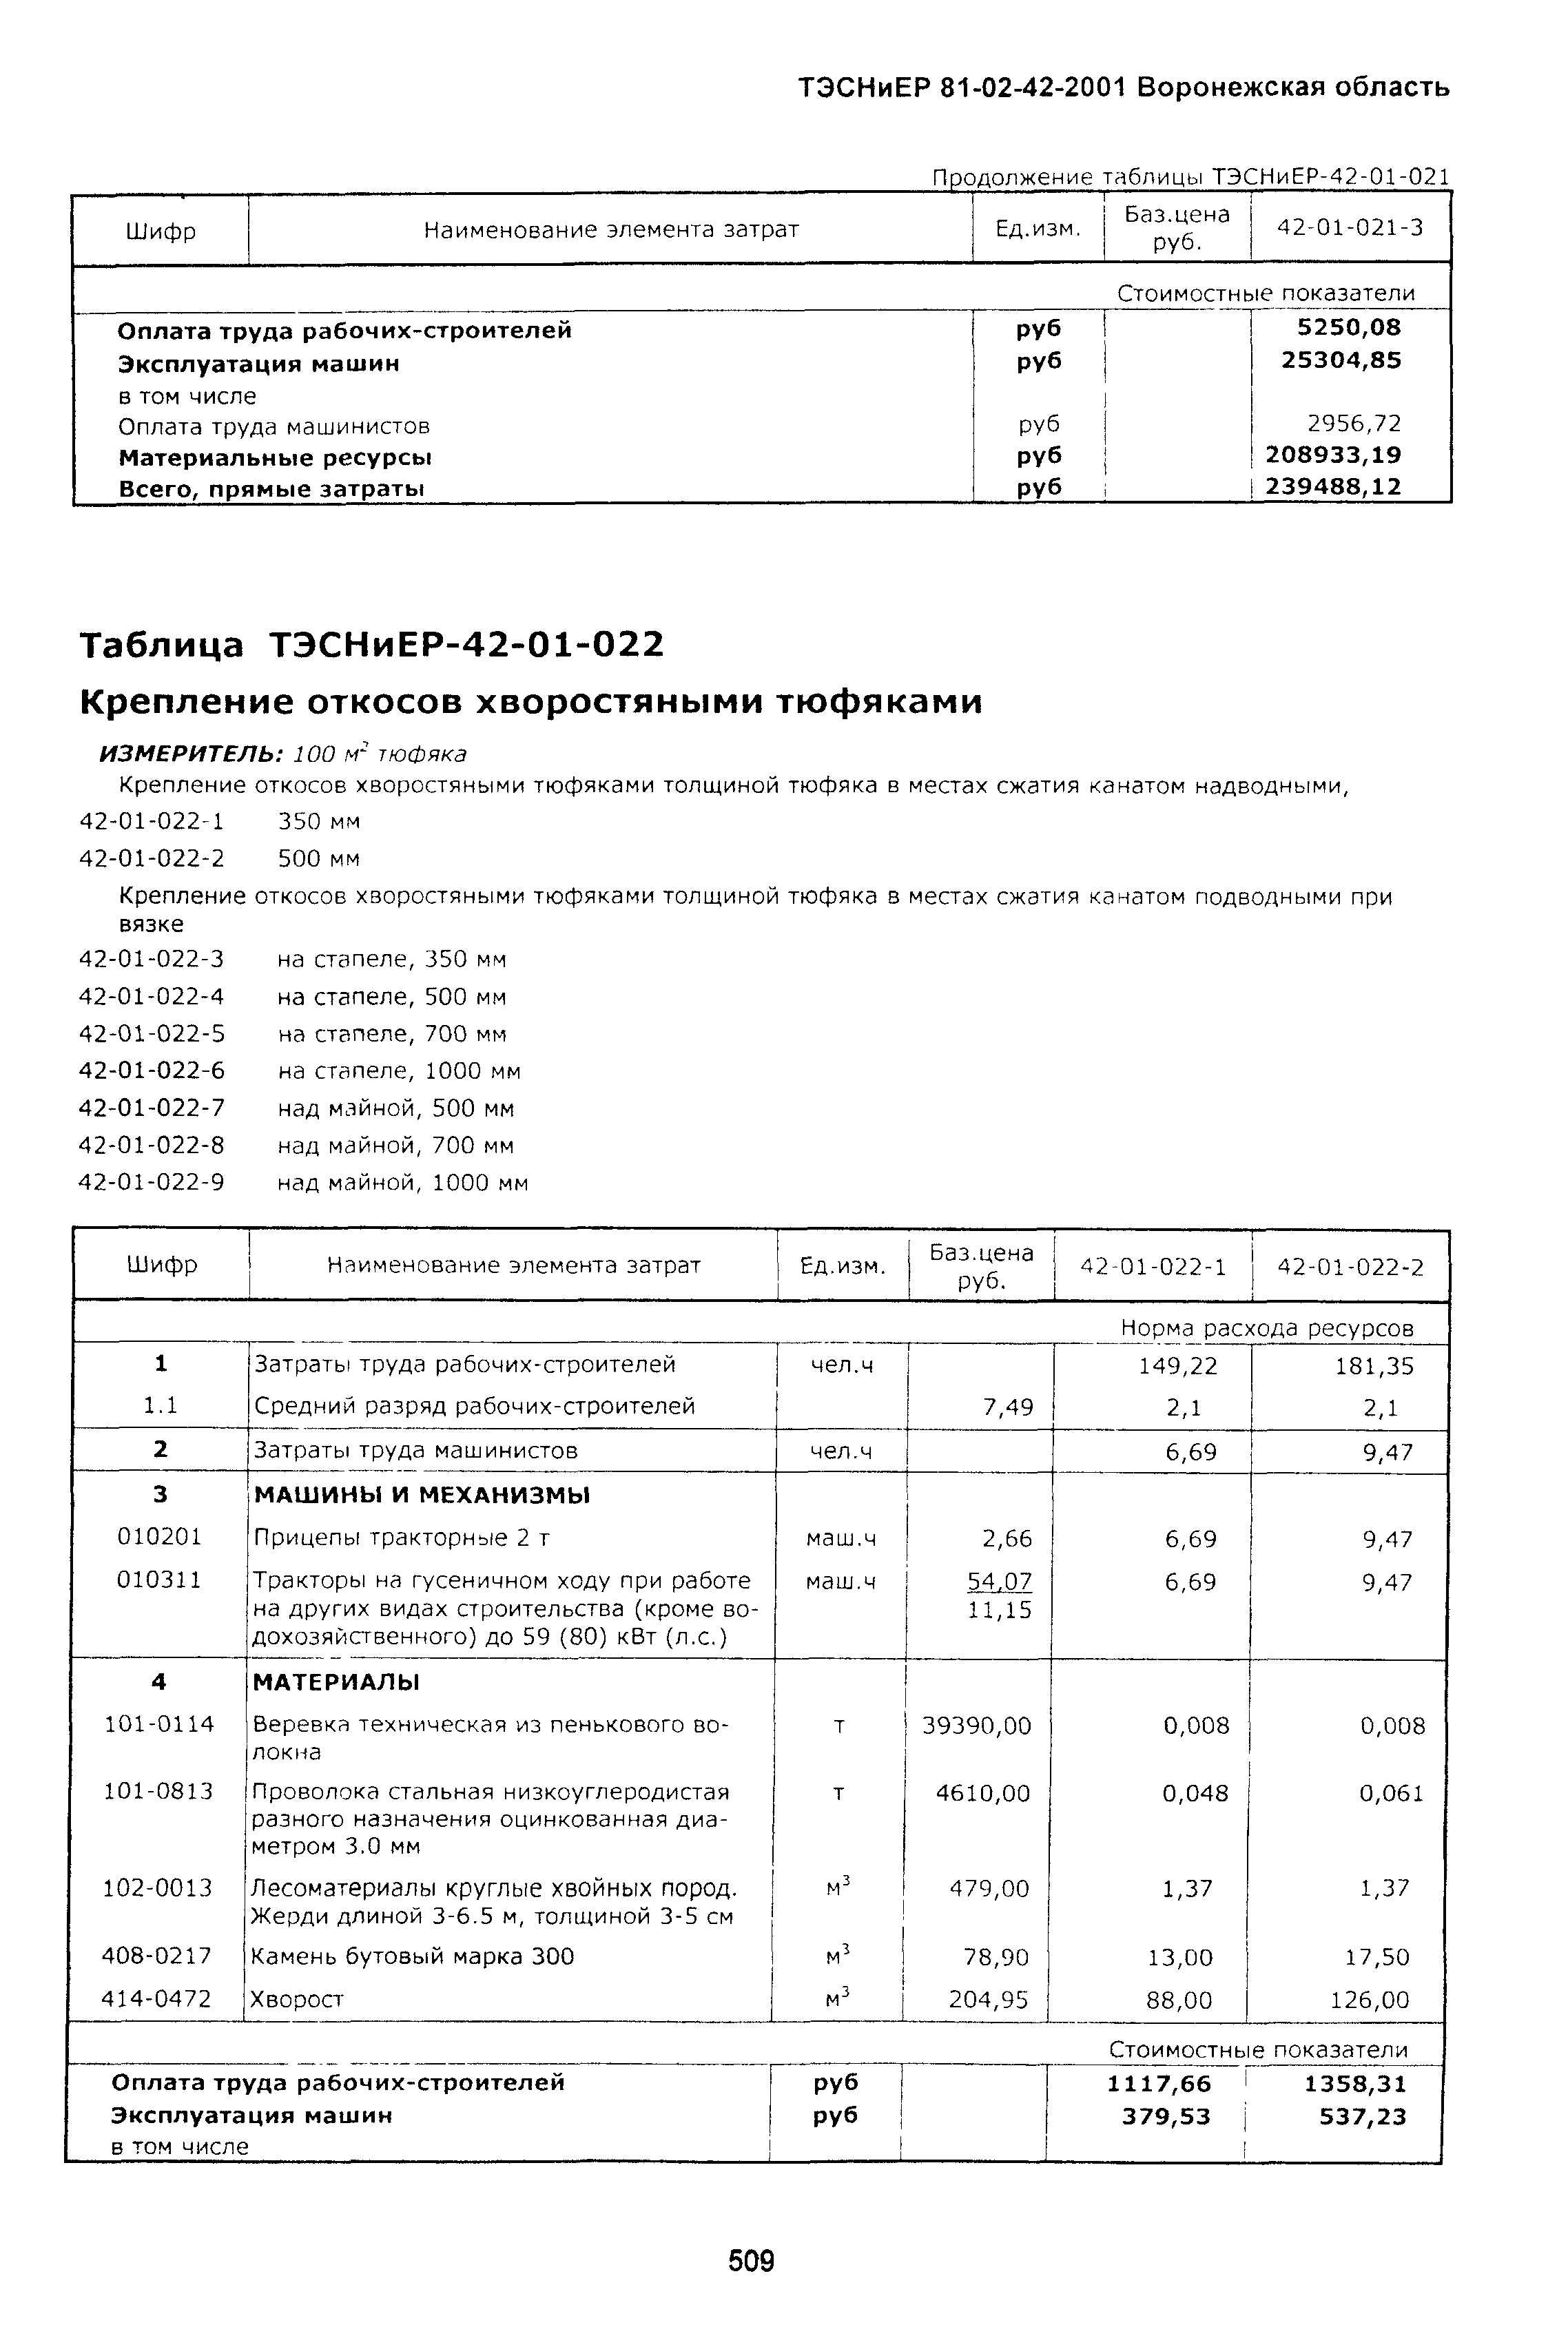 ТЭСНиЕР Воронежская область 81-02-42-2001